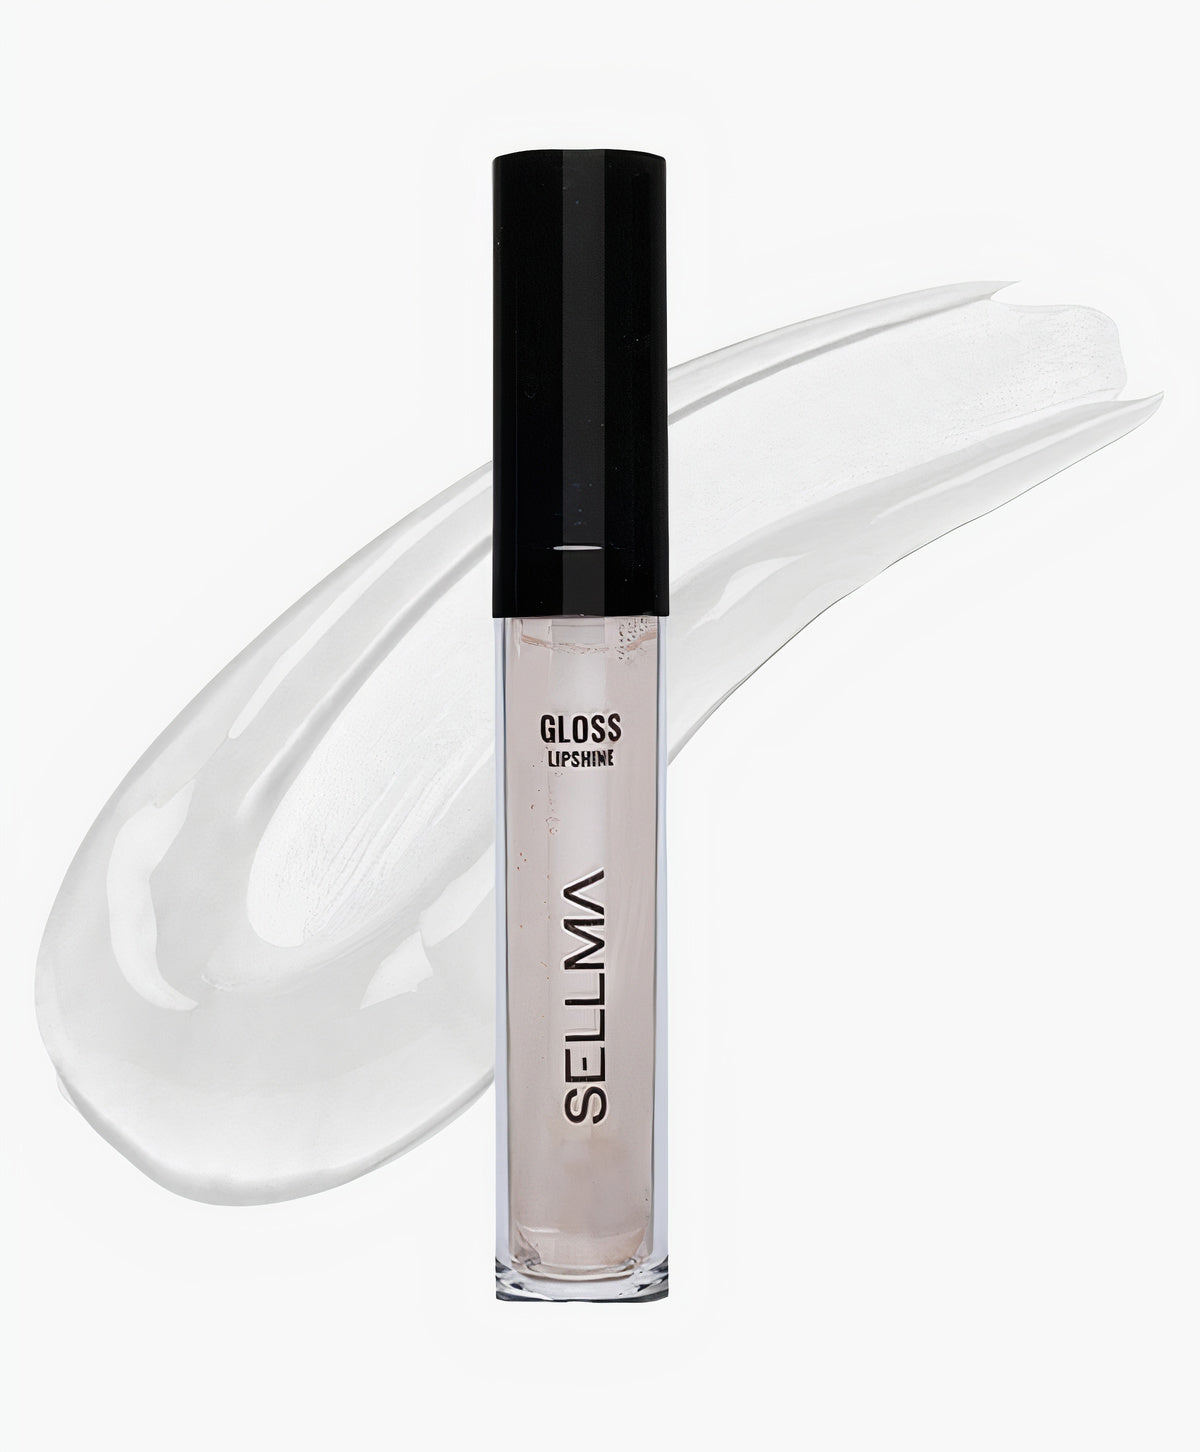 Gloss – Liquid Lip Shine - muss product beschreibung her